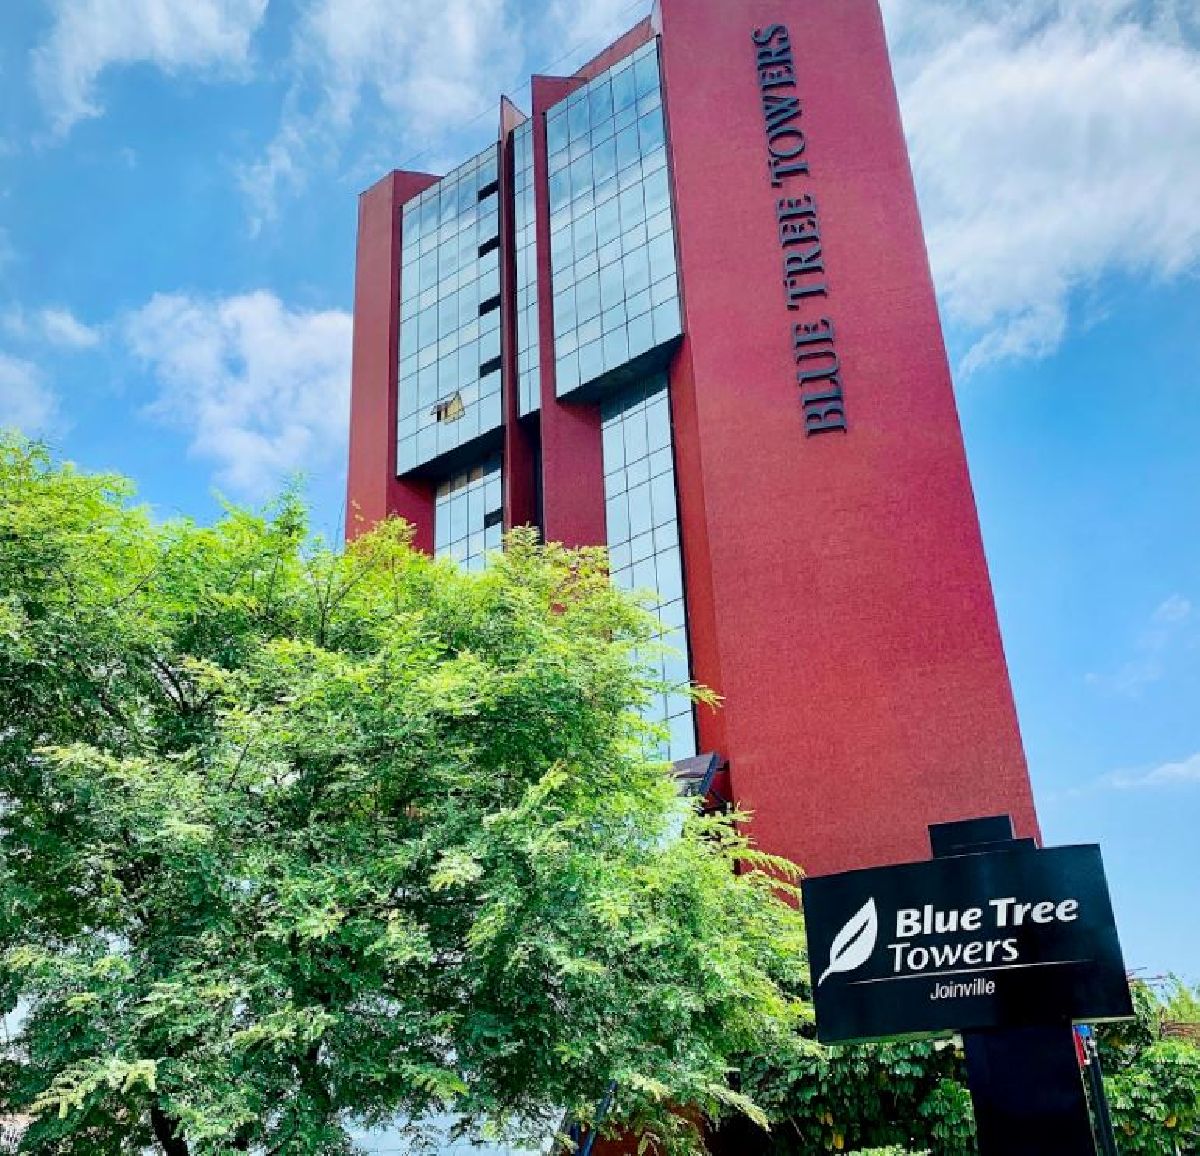 Blue Tree Towers Joinville registra 81% de ocupação em julho